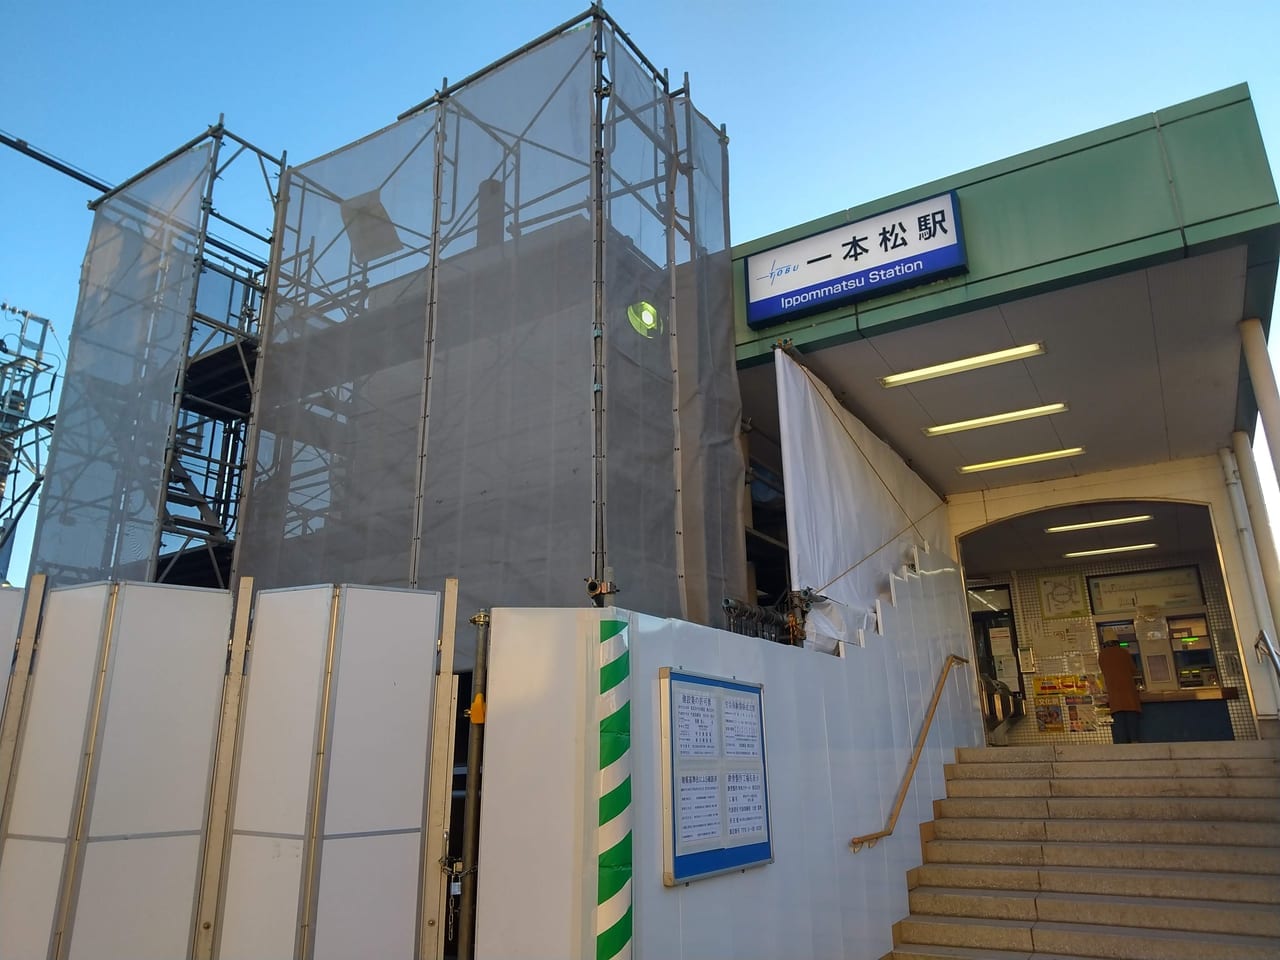 バリアフリー化工事中の東武越生線一本松駅